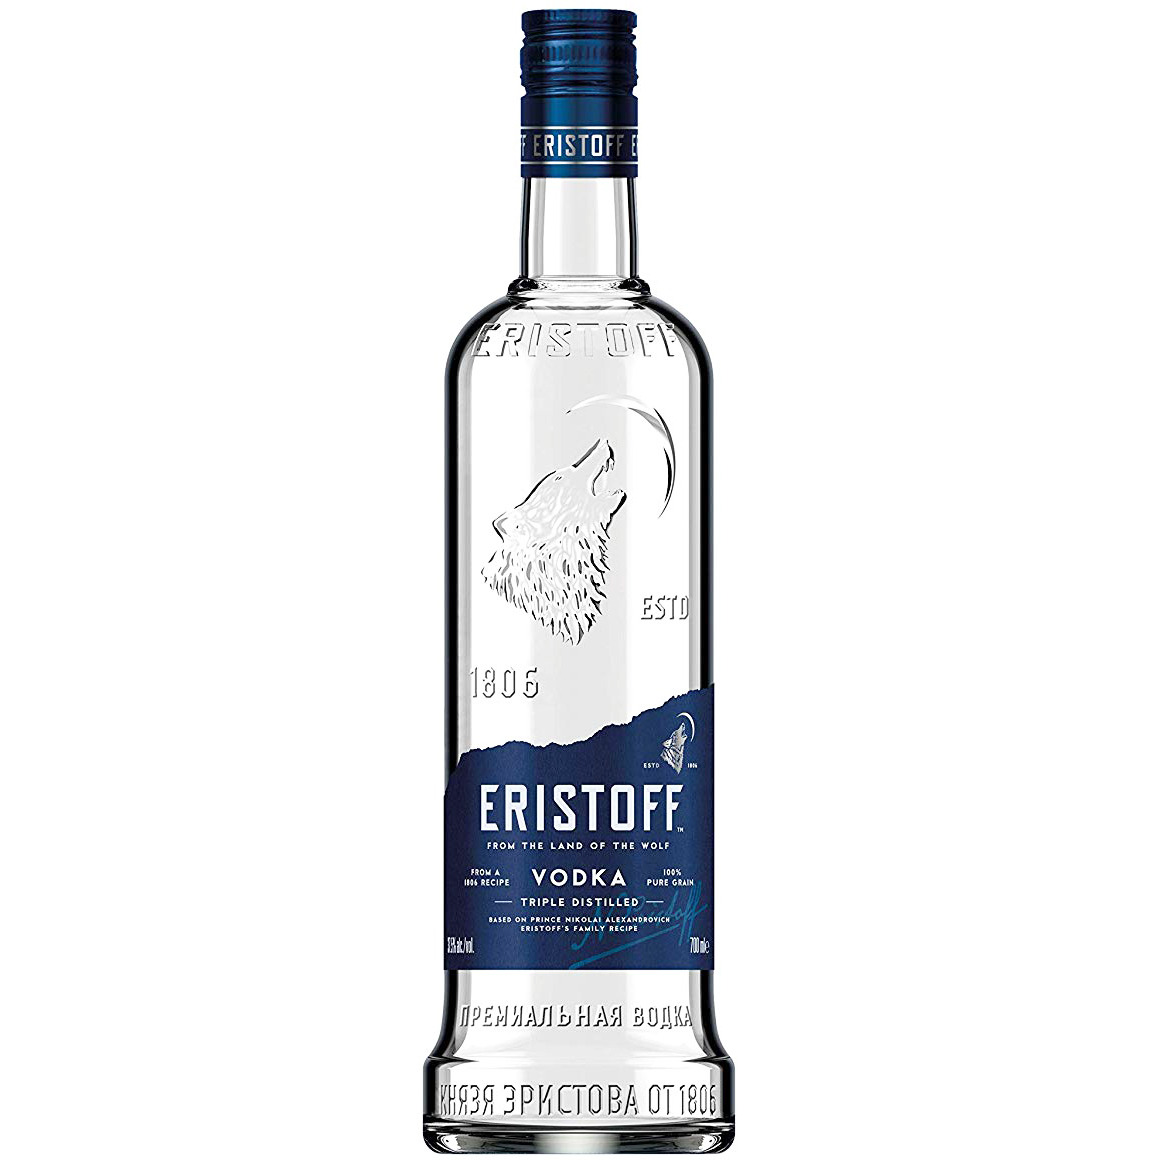 Eristoff - Brut 1 liter